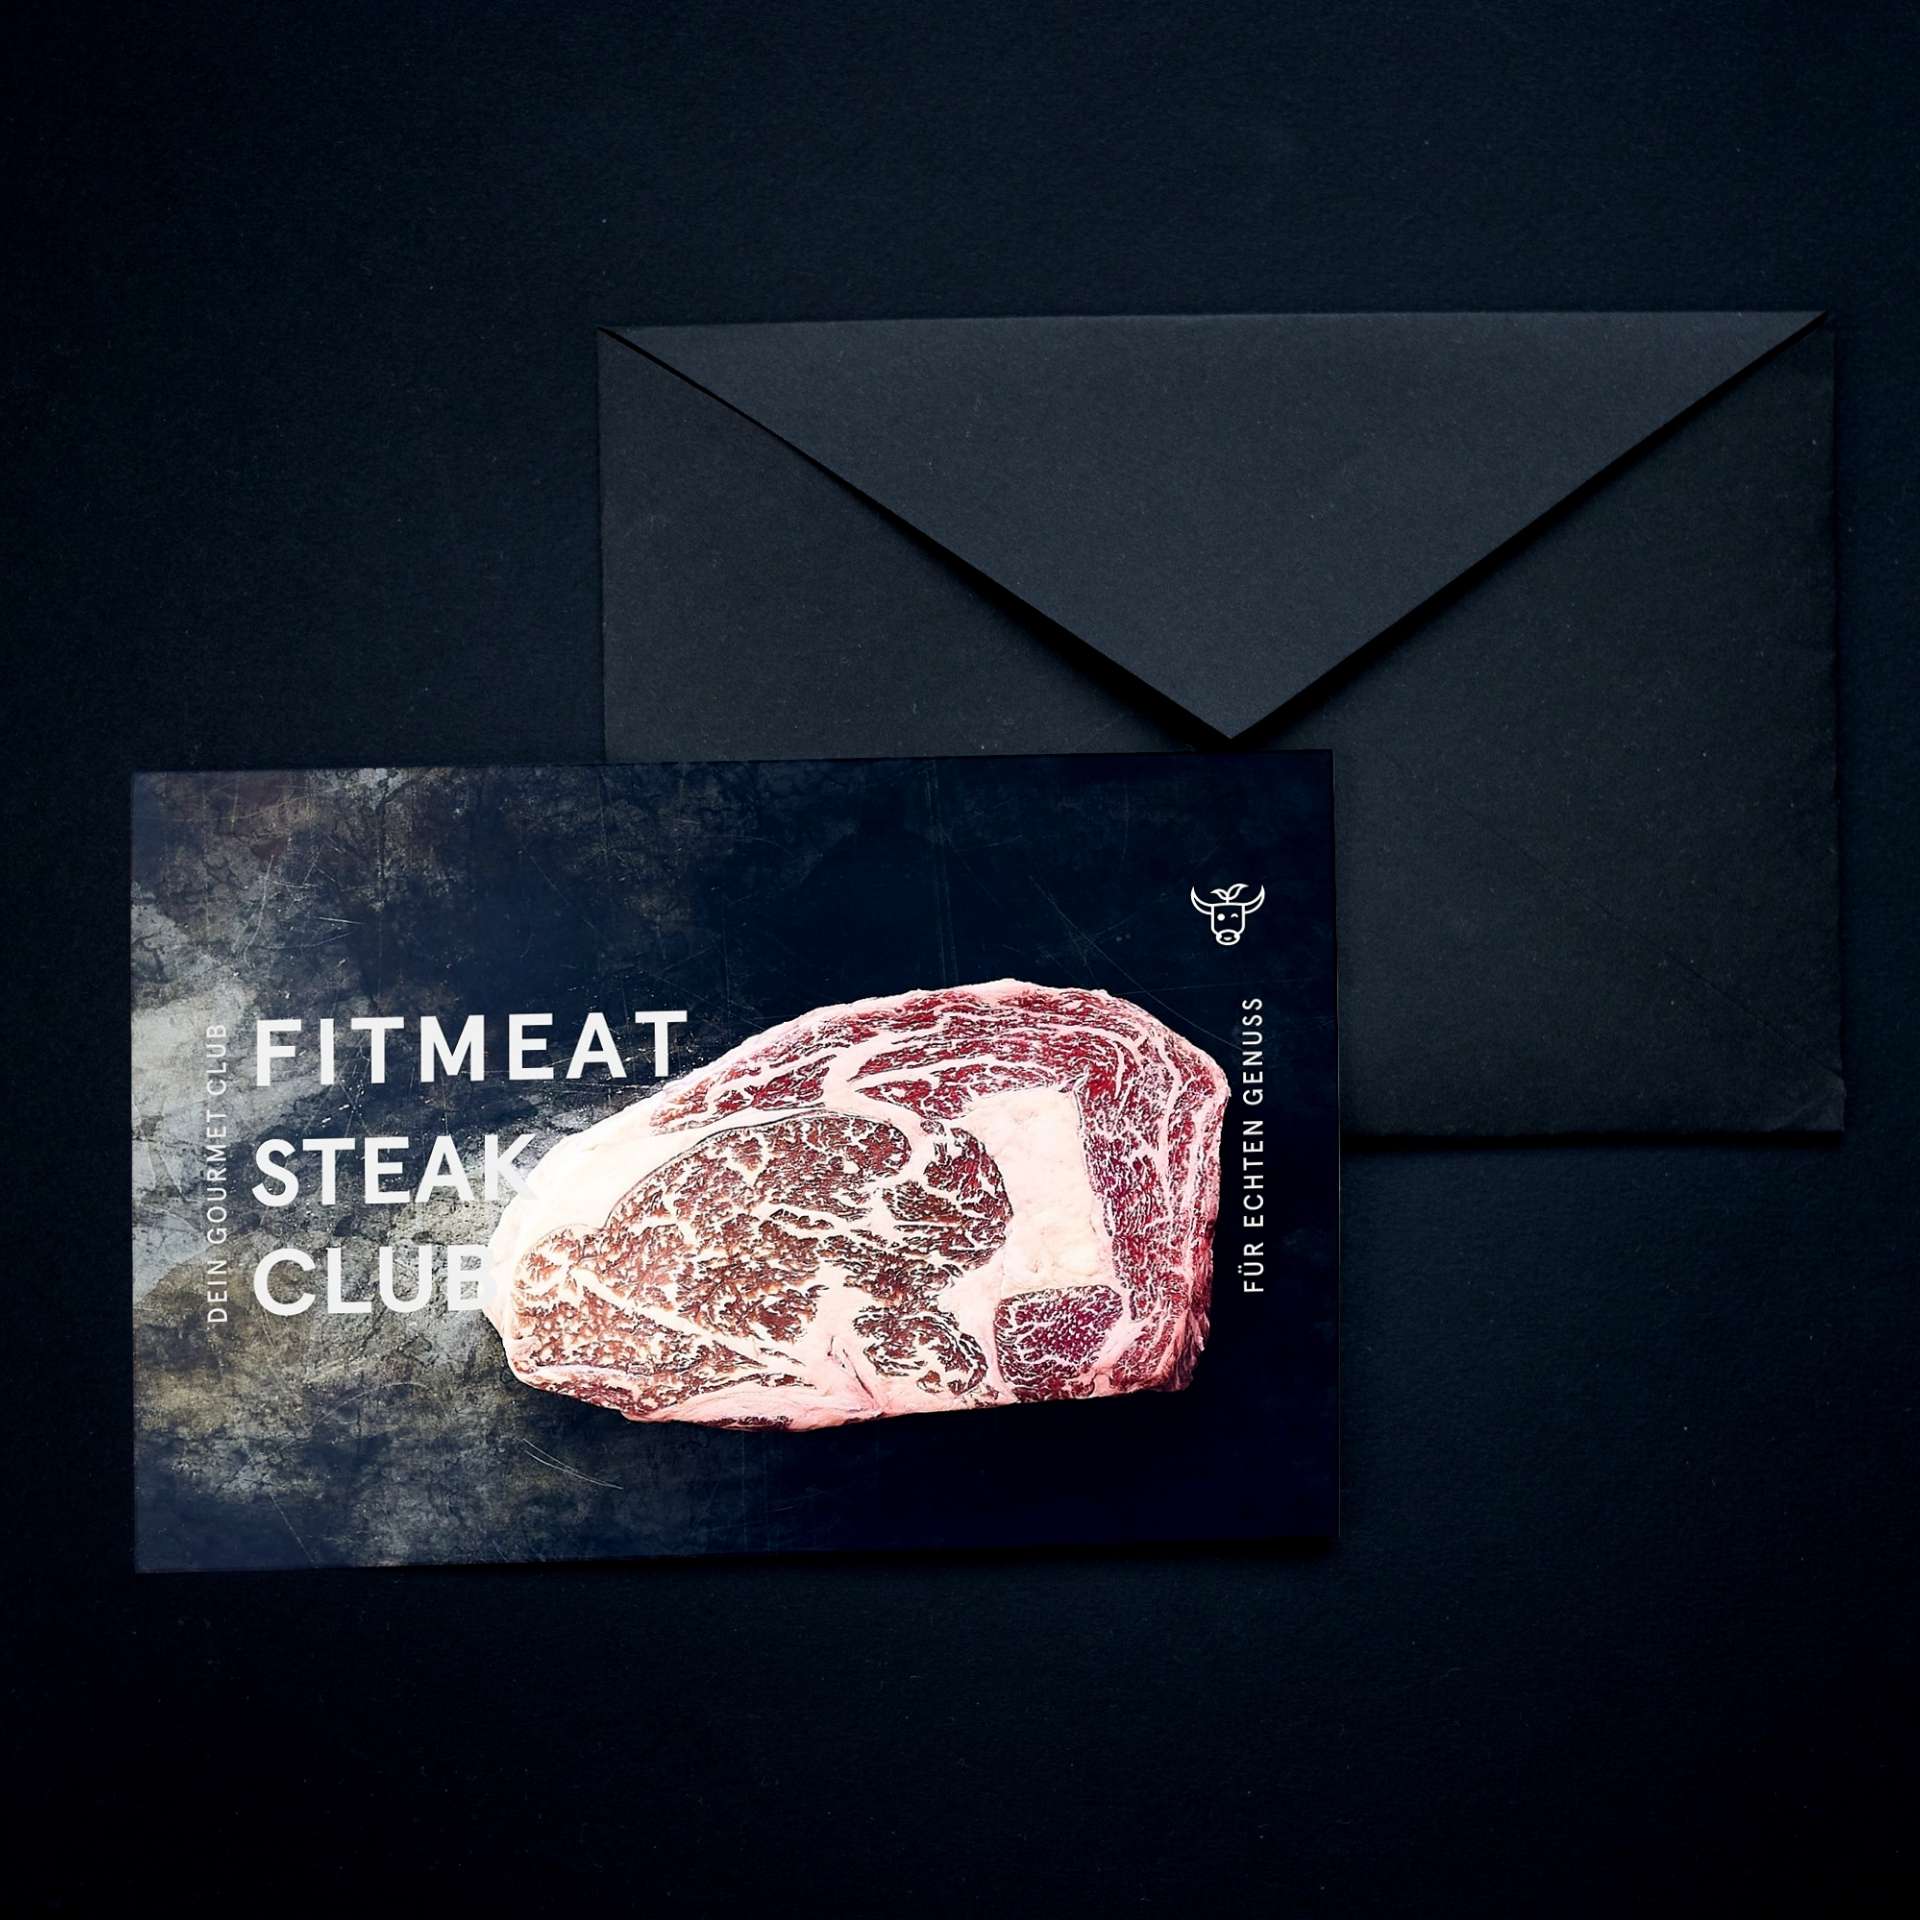 Fitmeat Steak Club